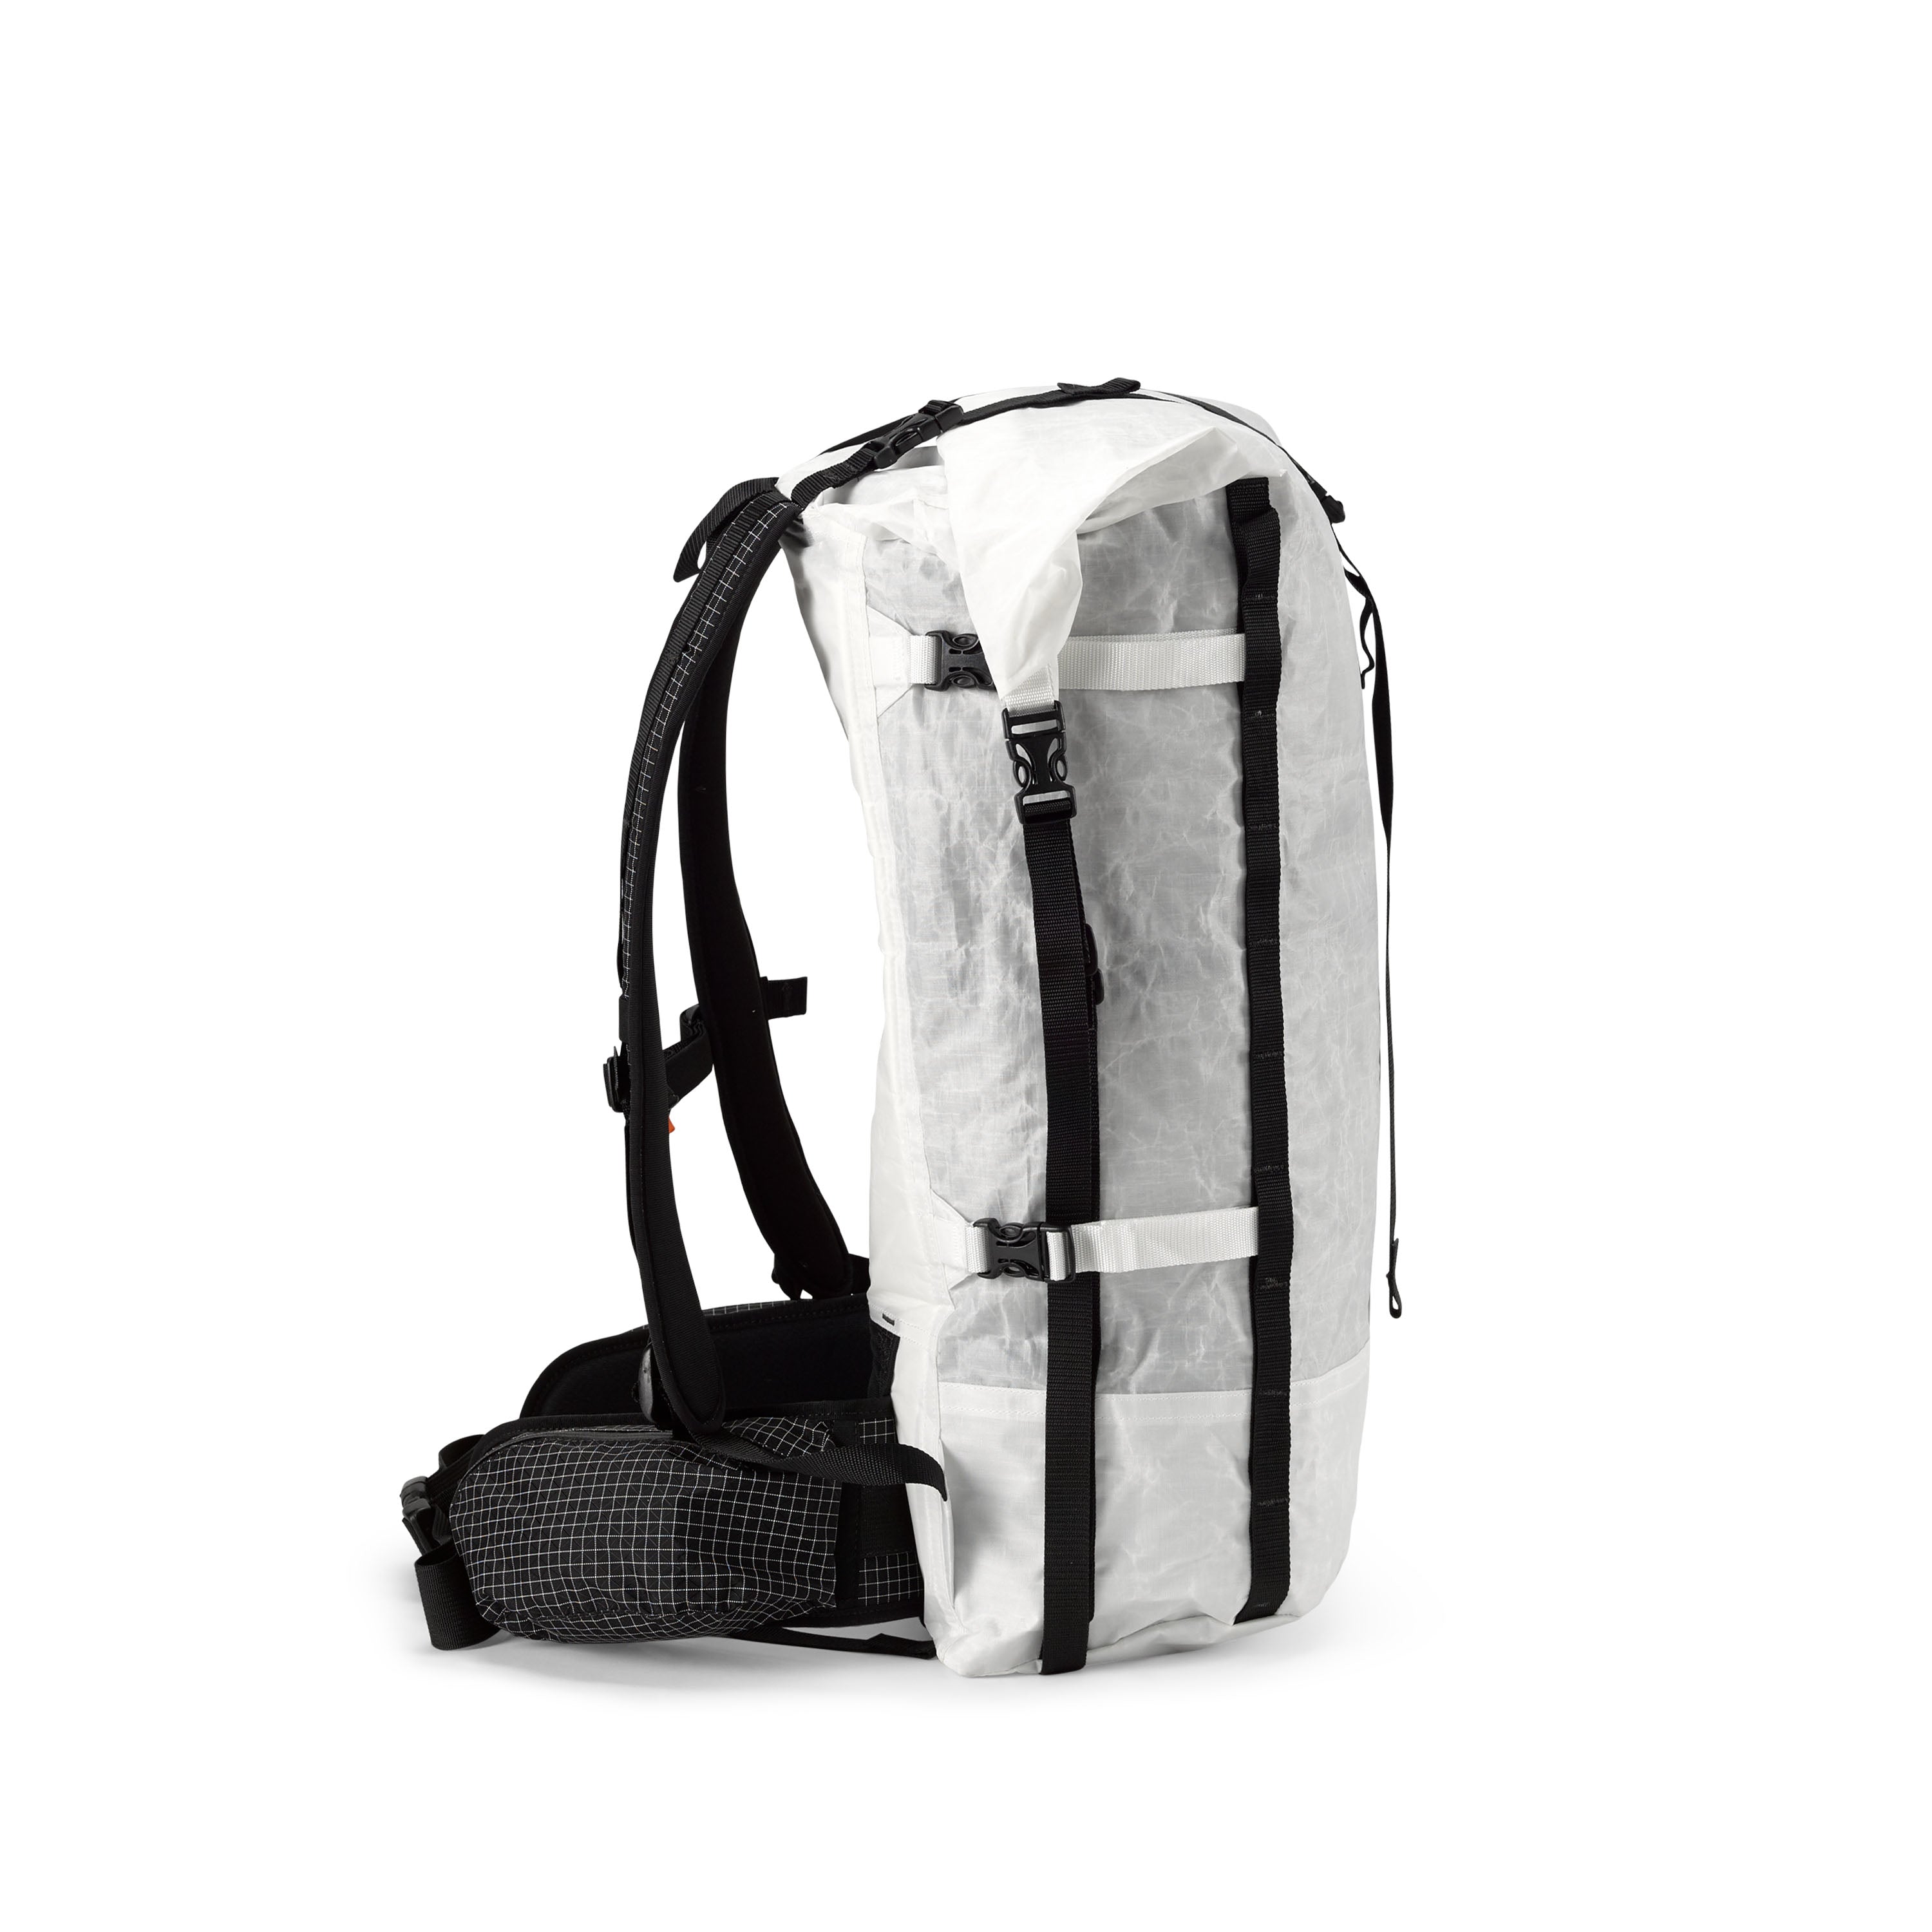 Leather-Trimmed Multi-Pocket Backpack